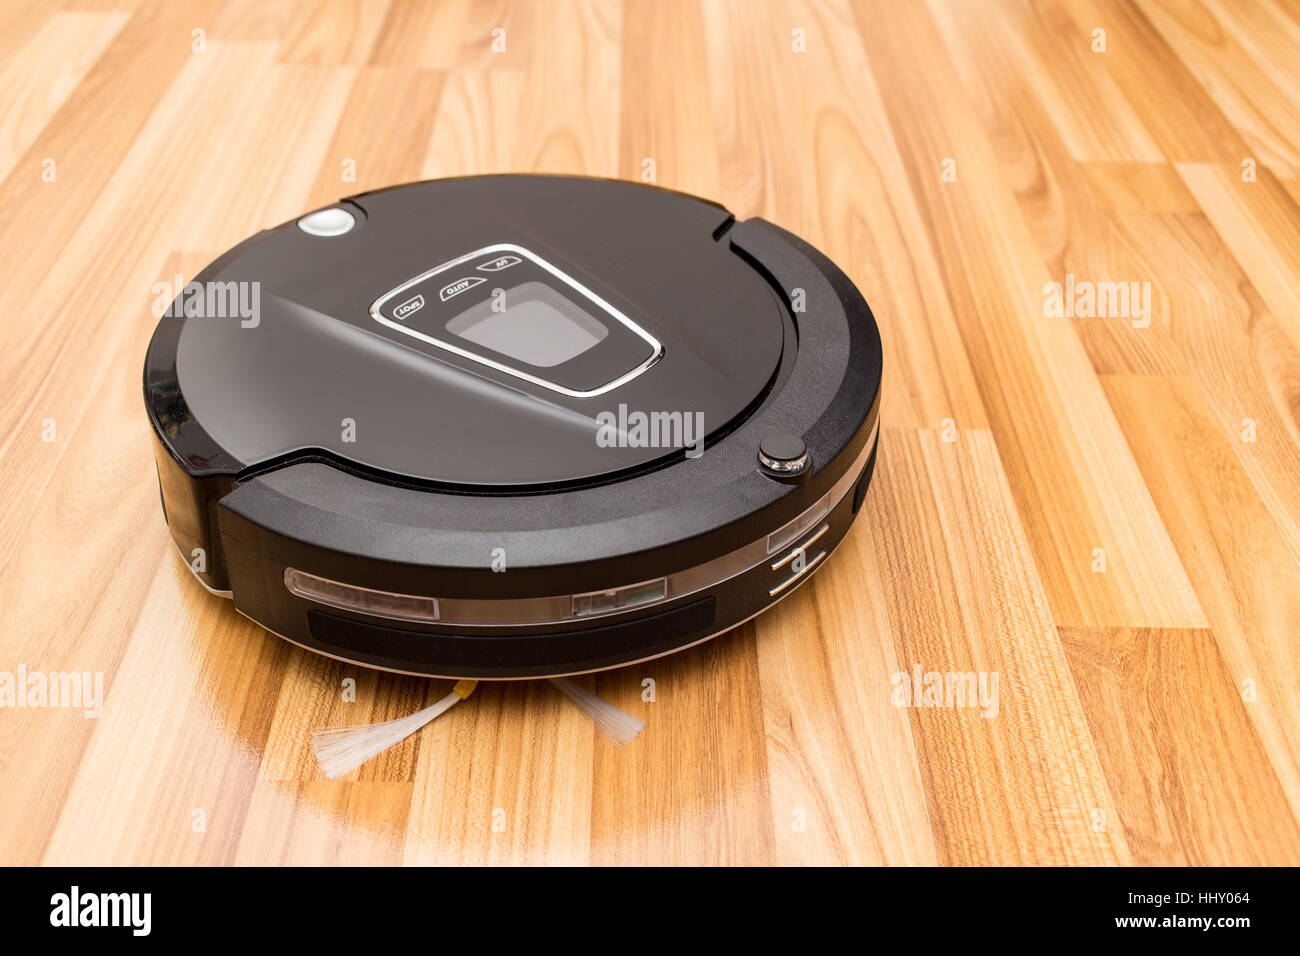 Aspirateur Robot sur parquet bois, Smart vide, nouvelle technologie d'automatiser les tâches ménagères. Banque D'Images